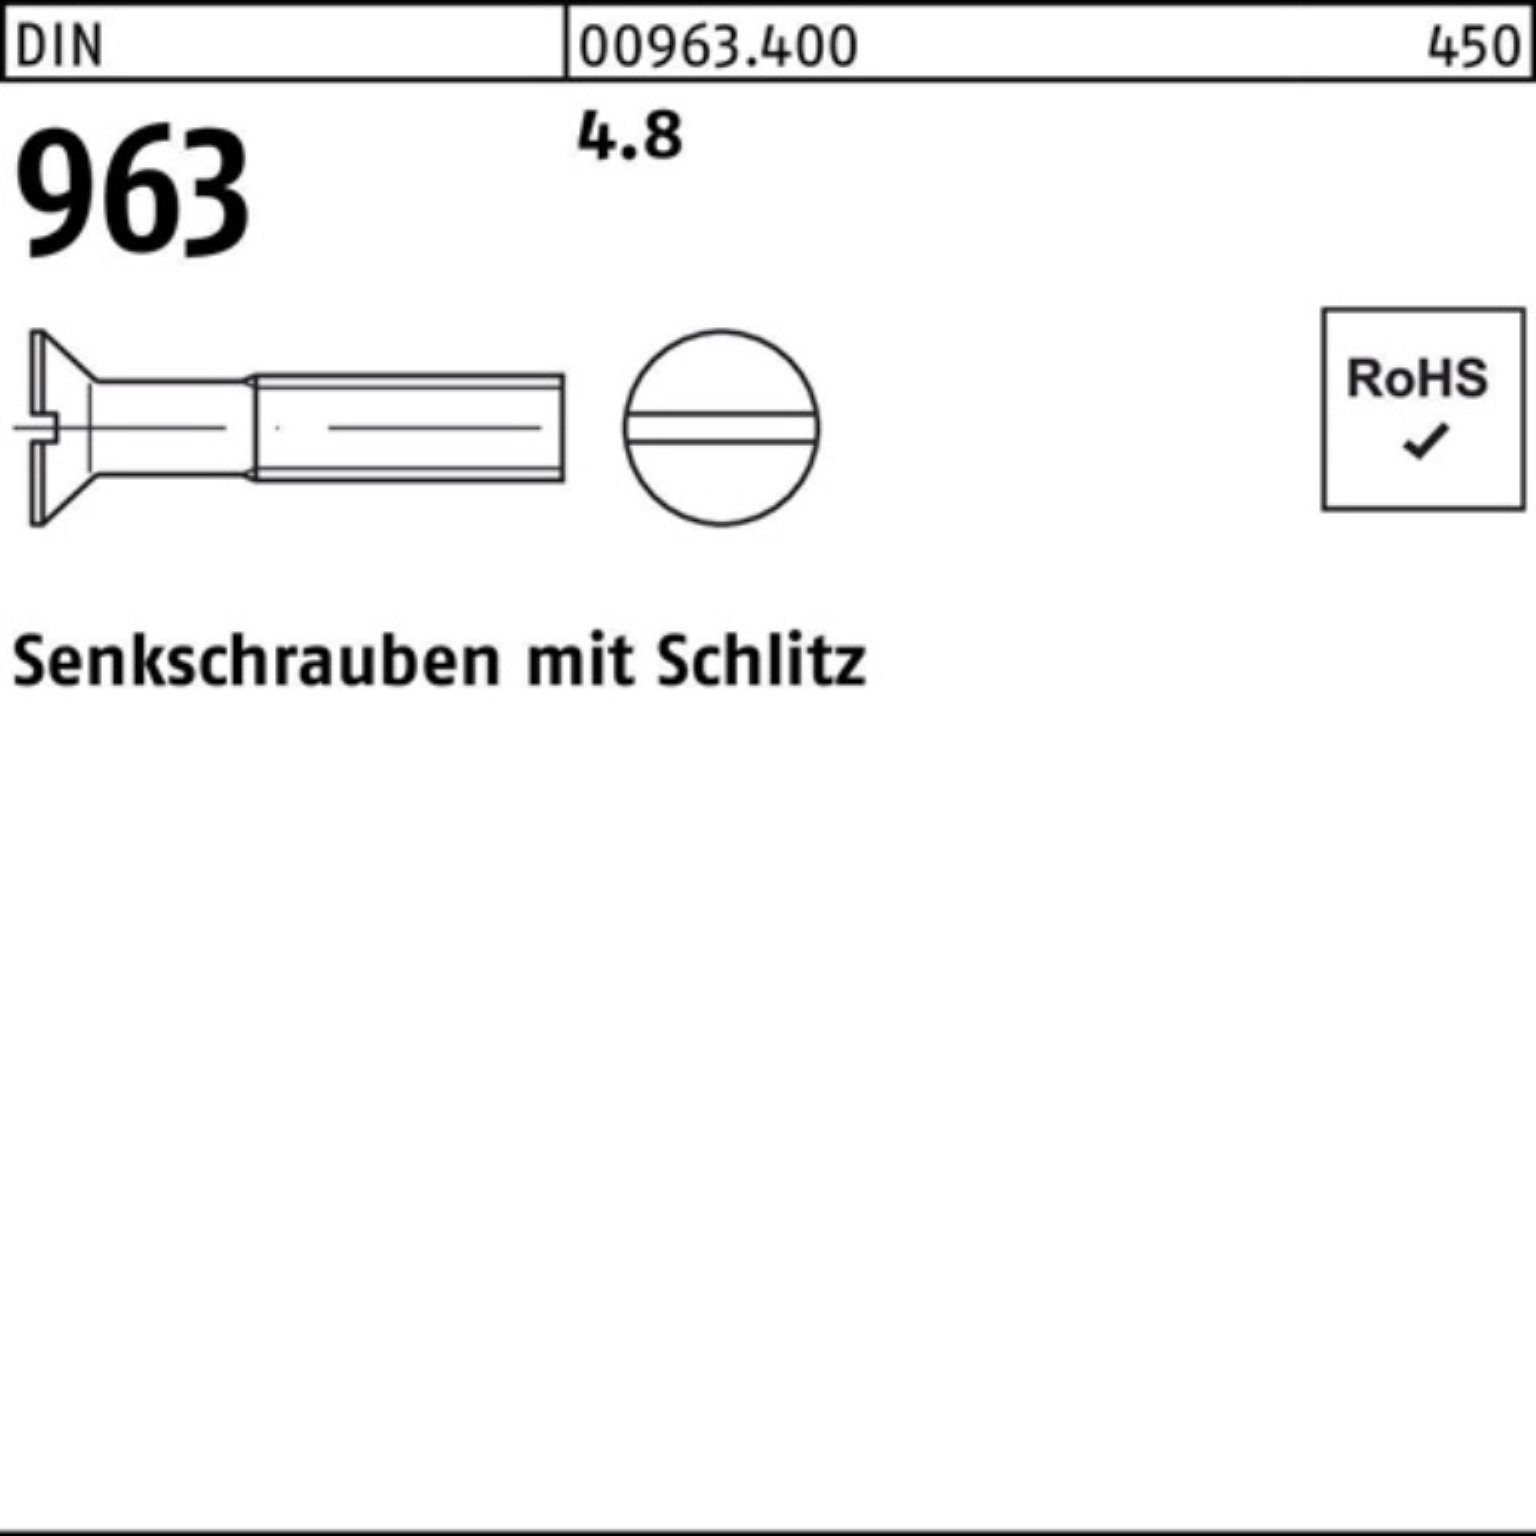 Senkschraube 963 DIN Reyher 963 M20x Stück Schlitz DIN Pack Senkschraube 4.8 25 60 100er